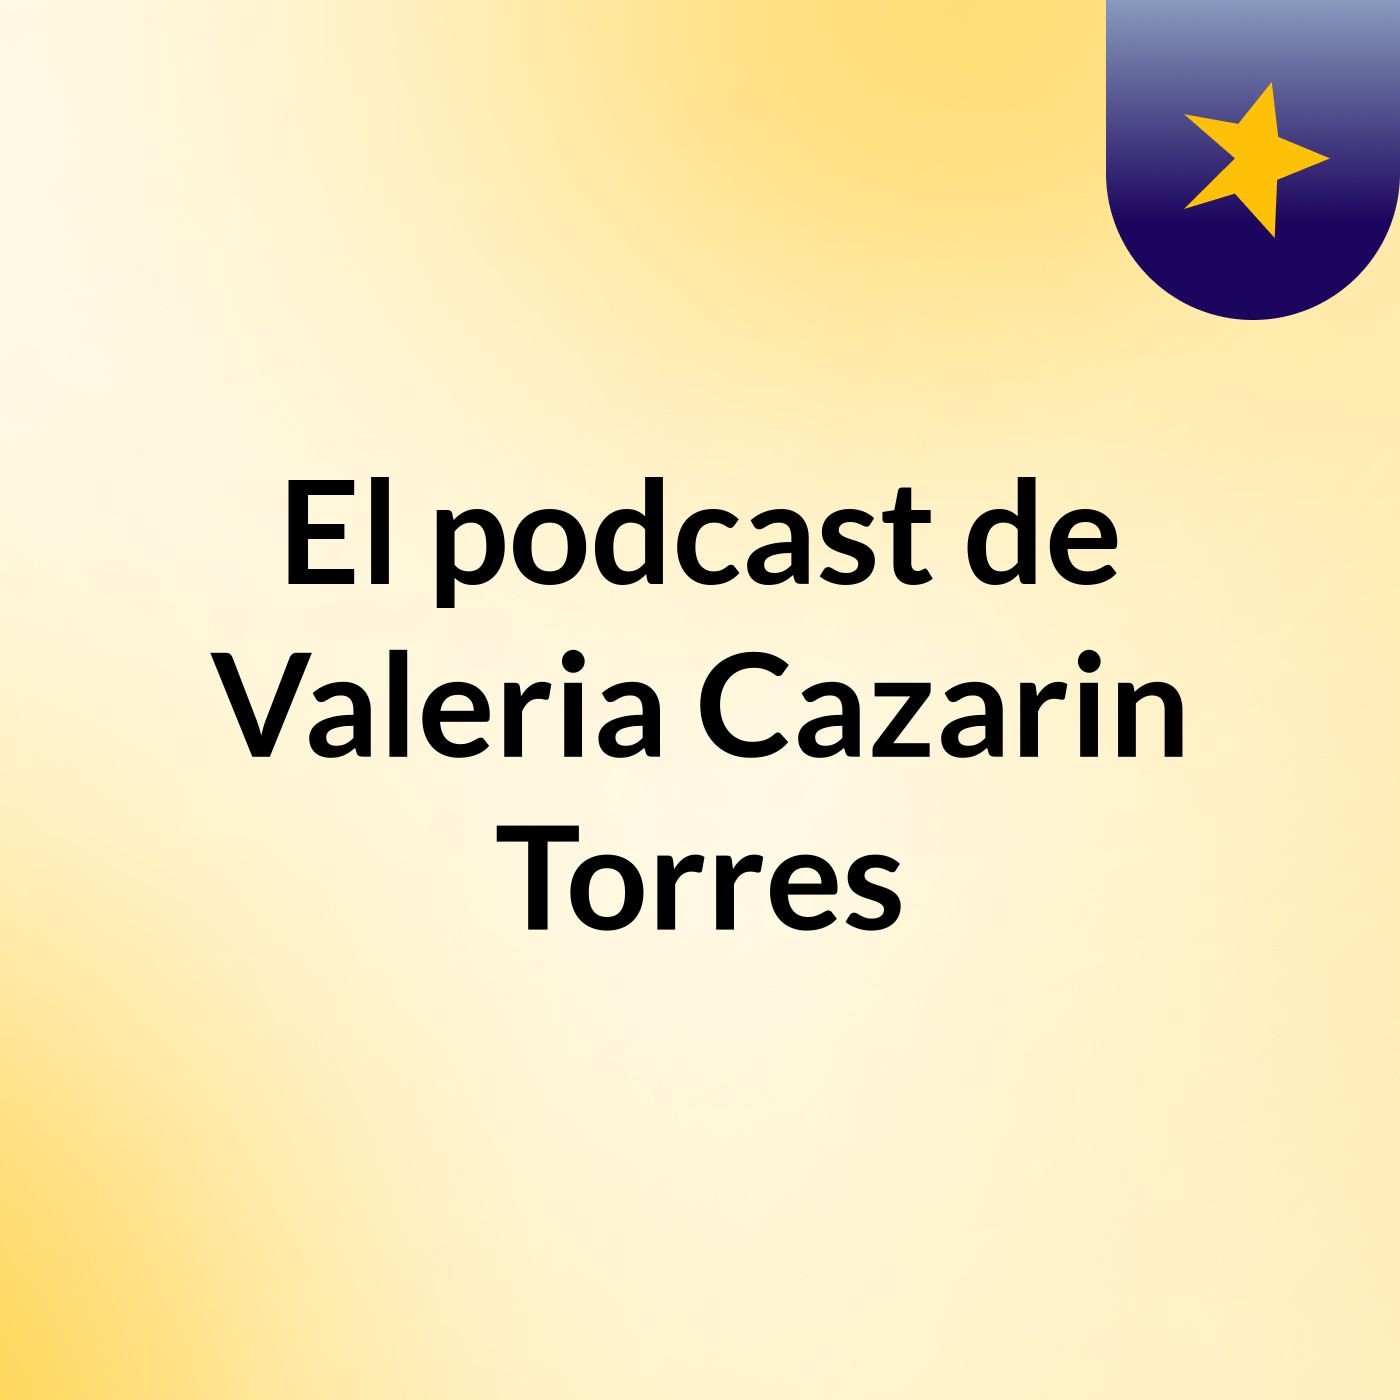 El podcast de Valeria Cazarin Torres